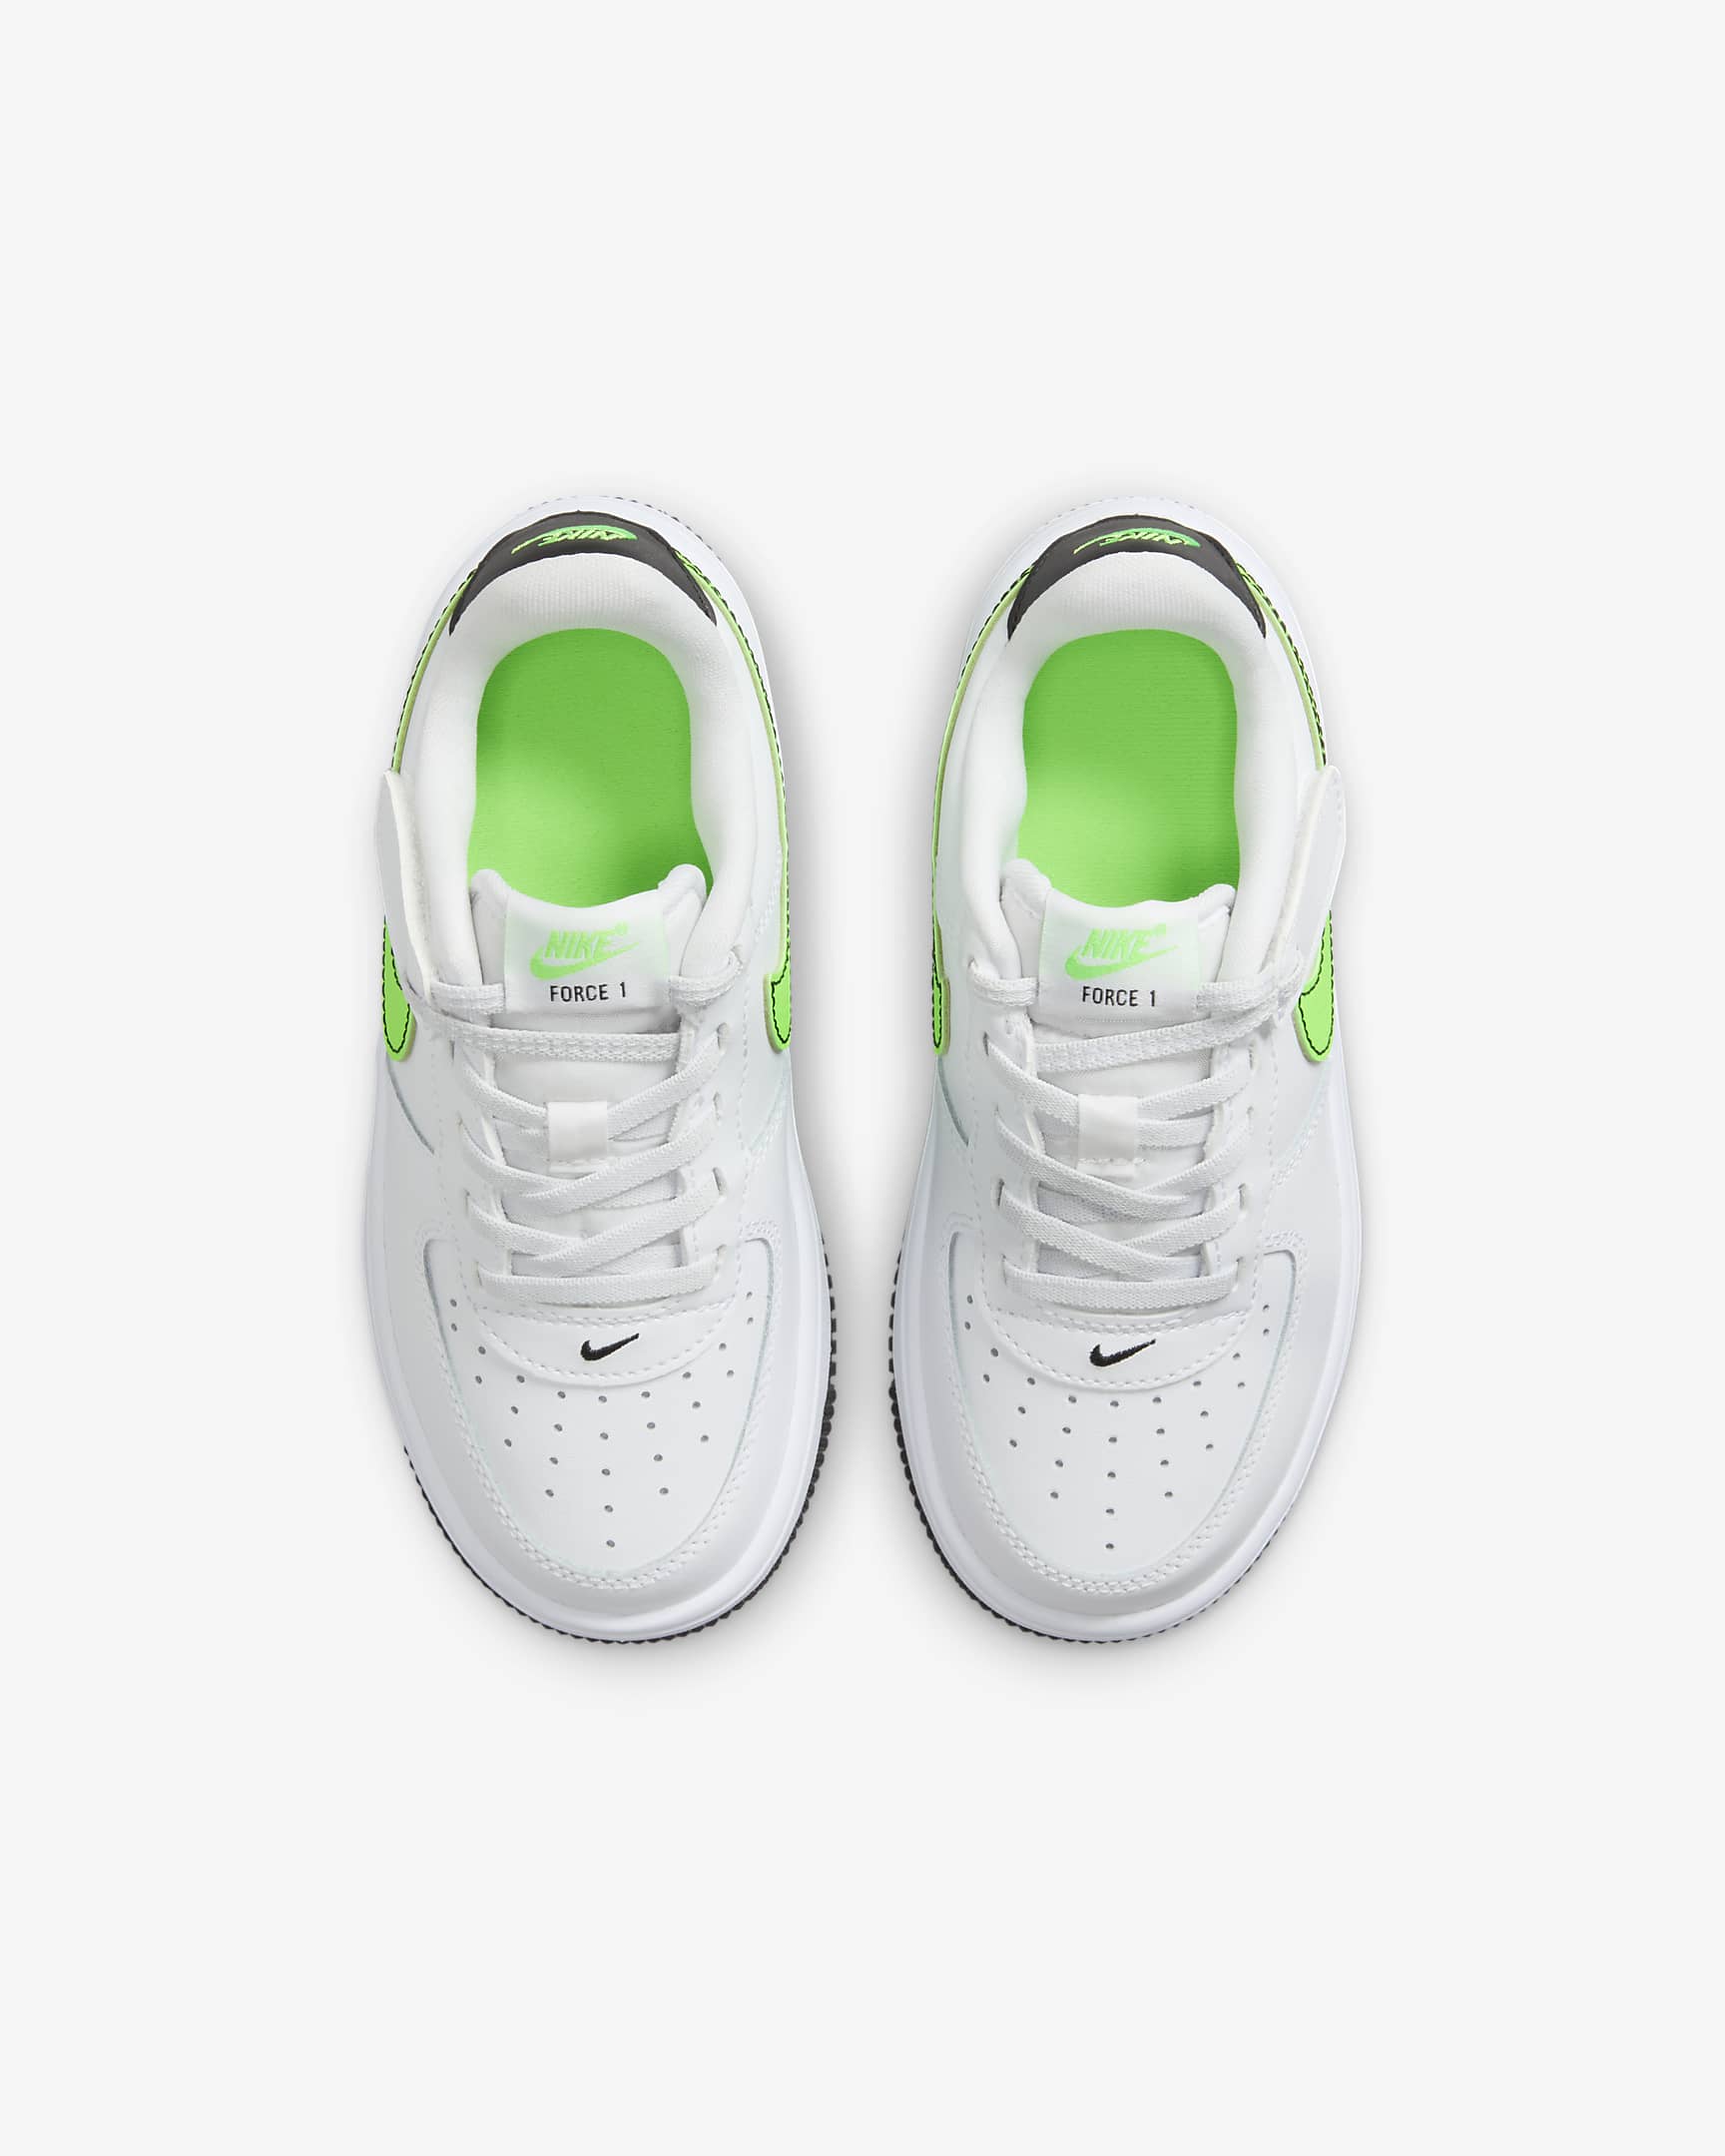 Nike Force 1 Low EasyOn Younger Kids' Shoes - White/Black/Green Strike